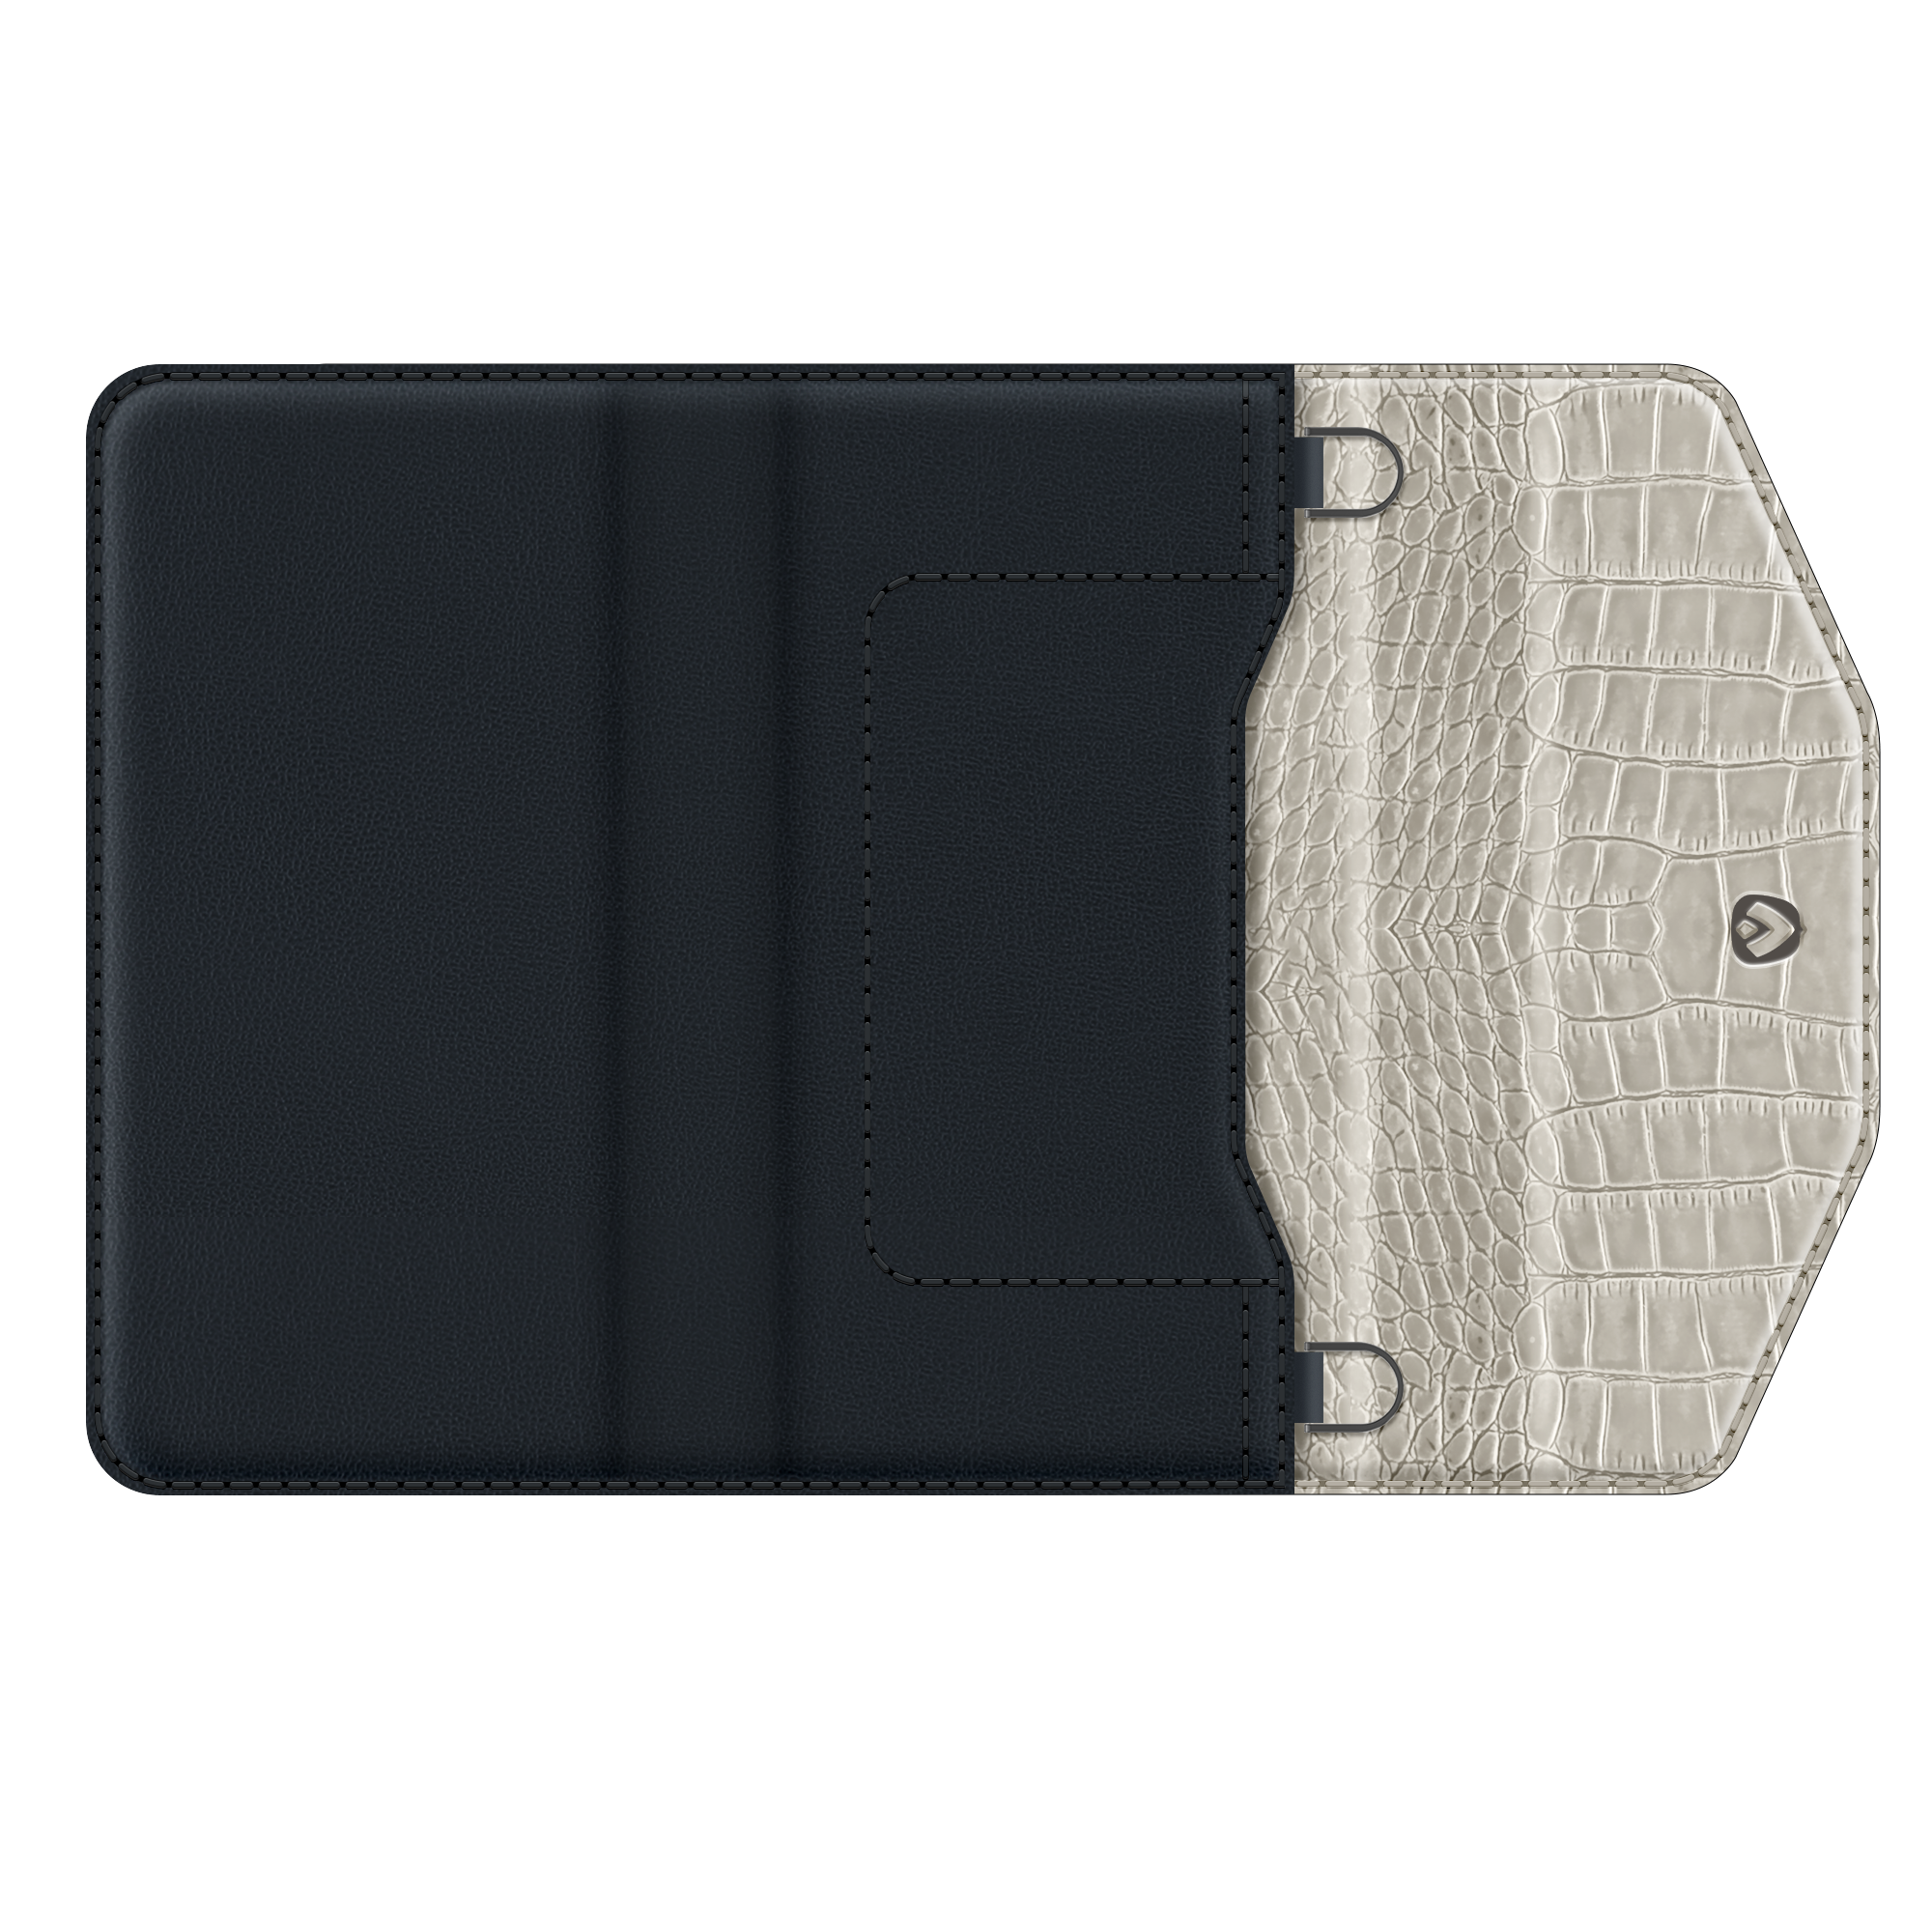 Entfernbare 2-in-1 Luxus Clutch iPhone 12 Pro Max Schwarz